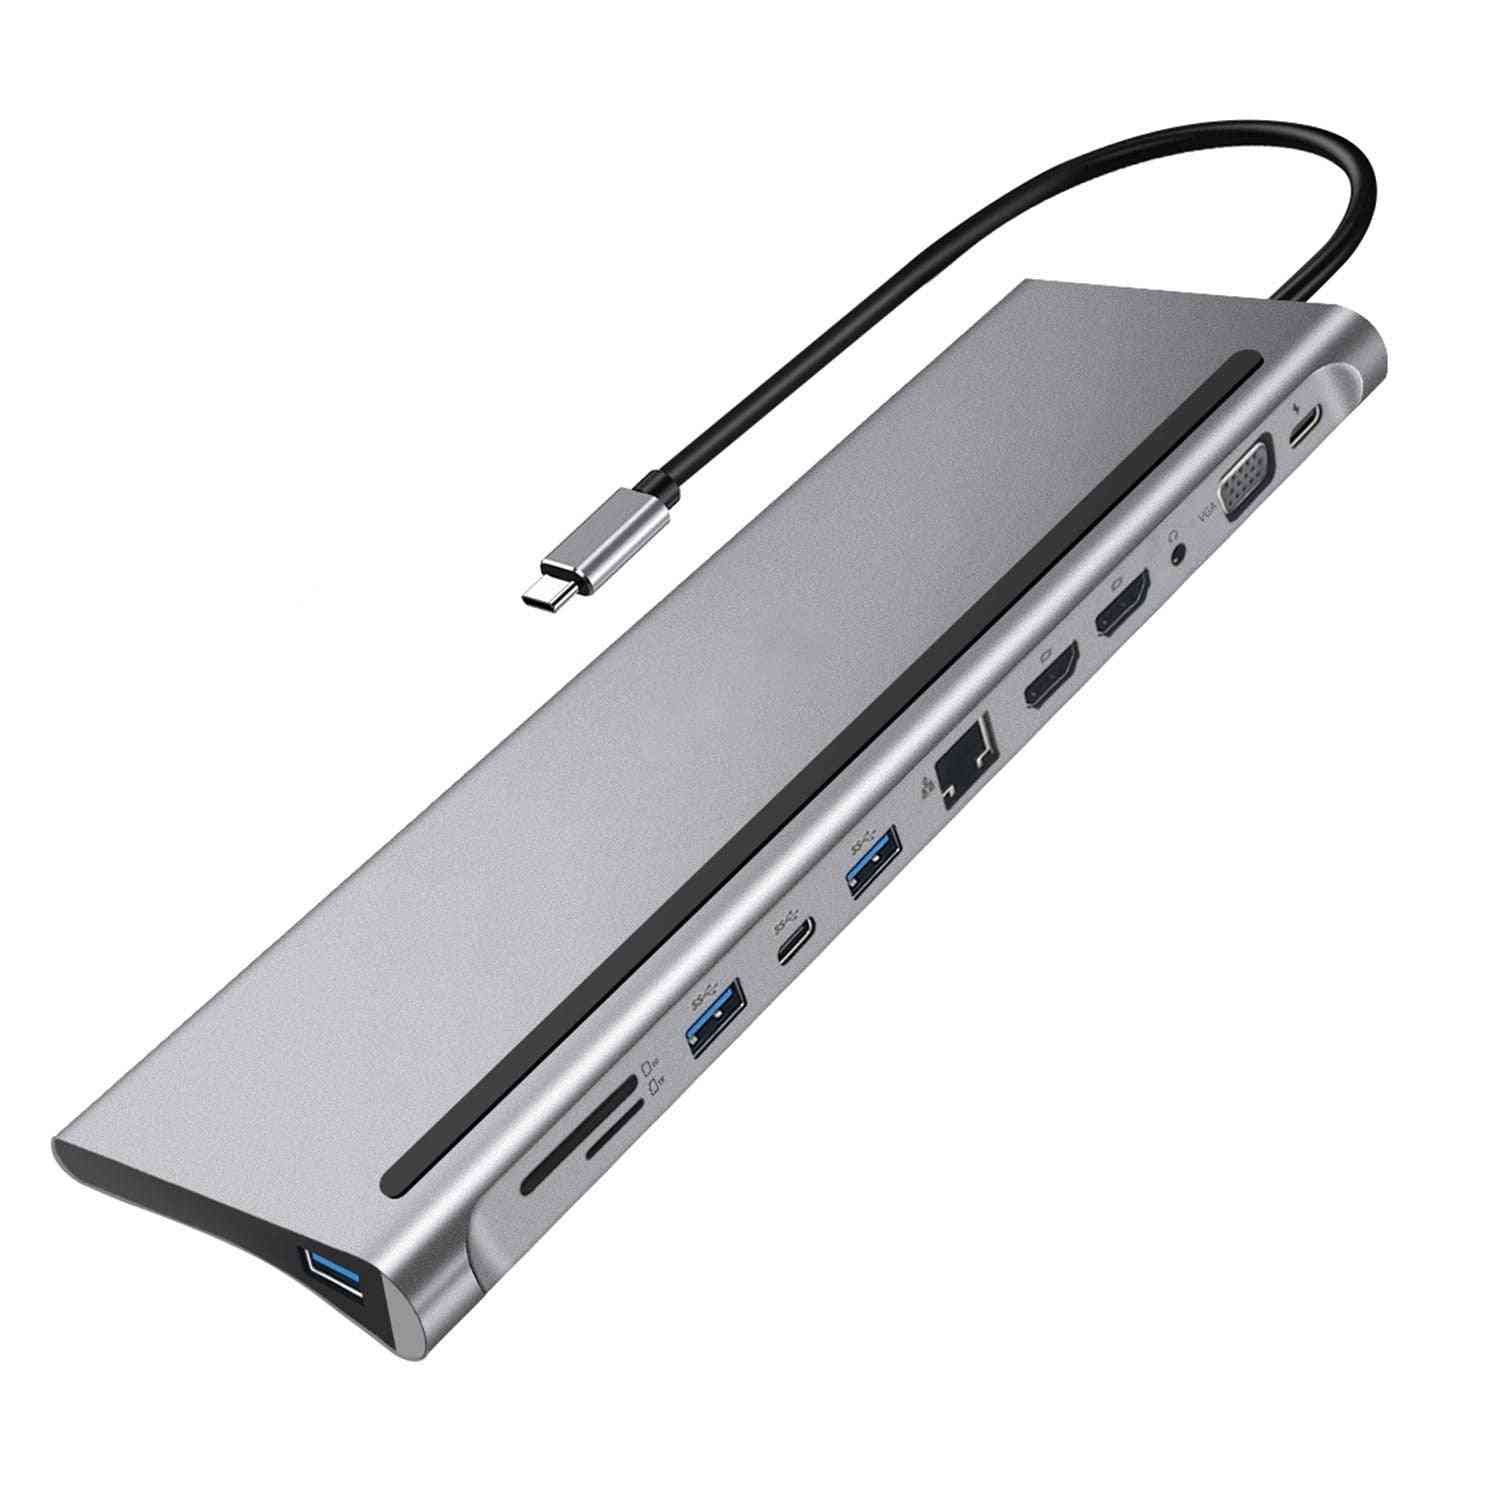 Usb c hub 12-in-1 type-c dongle adapter / állomás sd / tf kártyaolvasóval Windows és MacBook számára